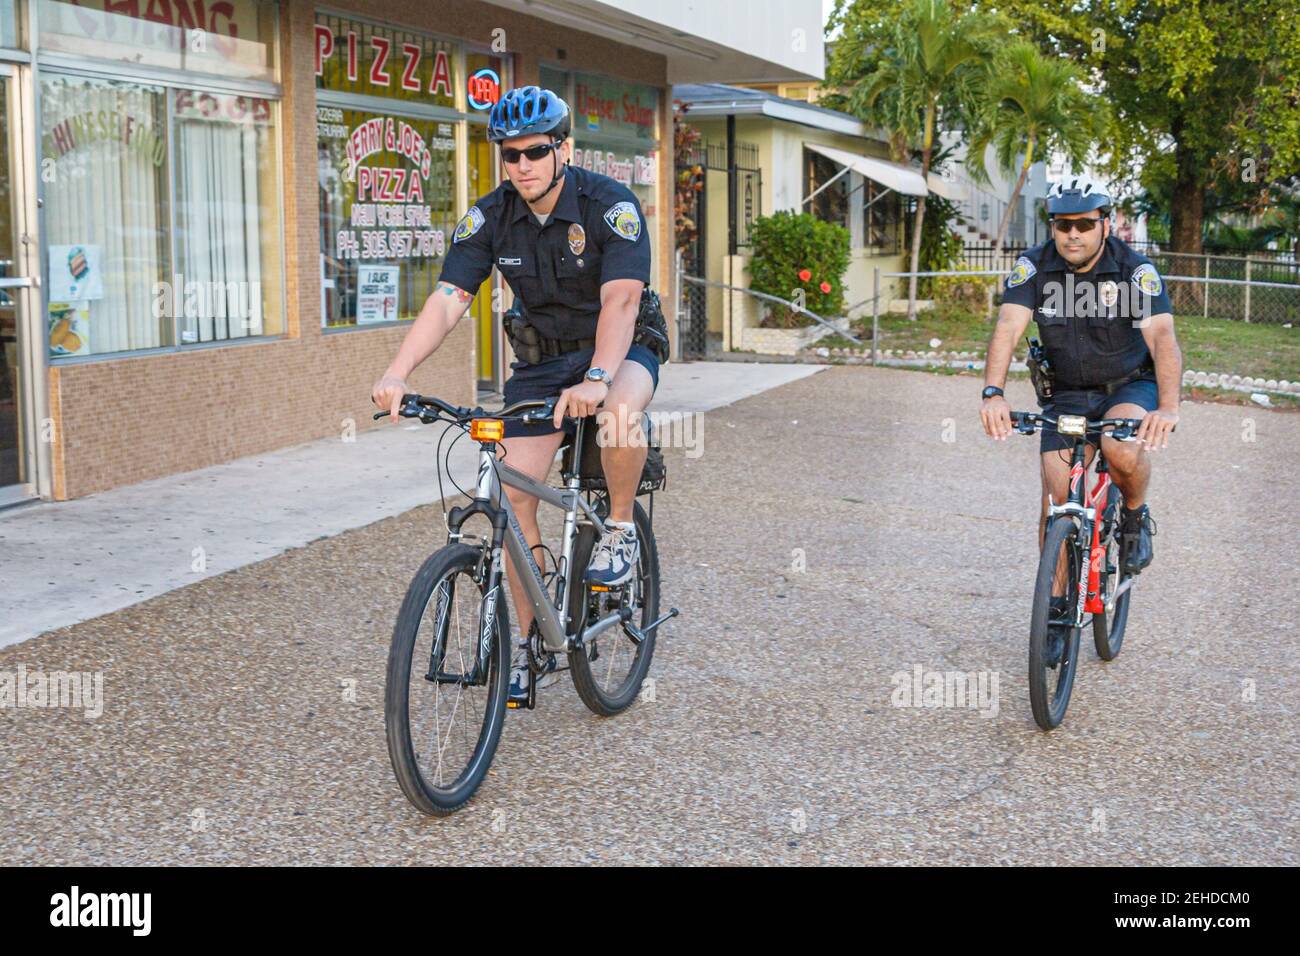 North Miami Beach Florida, Dipartimento di polizia, bicicletta pattuglia poliziotto guida poliziotti, Foto Stock